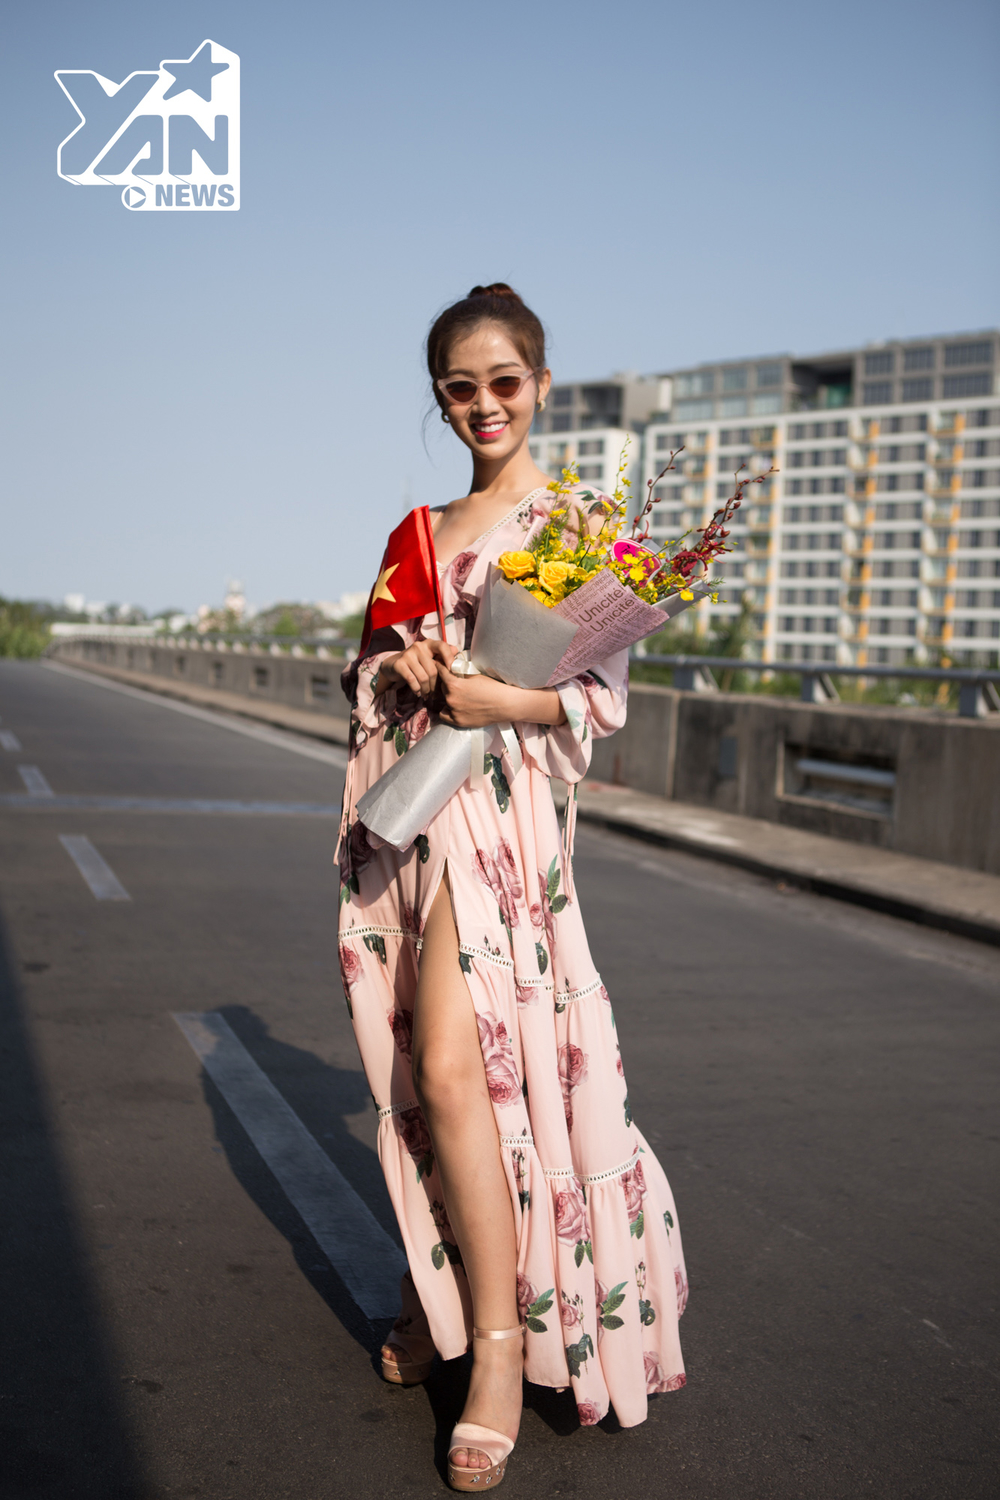 
Xuất hiện tại sân bay để sang Thái Lan chuẩn bị cho đấu trường nhan sắc Hoa hậu Chuyển giới Quốc tế, Nhật Hà thu hút với nhan sắc xinh đẹp và quyến rũ. Diện bộ đầm hoa màu hồng pastel với thiết kế trễ vai, kết hợp xẻ tà táo bạo, người đẹp sinh năm 1996 khoe vẻ đẹp nhẹ nhàng và thanh lịch.